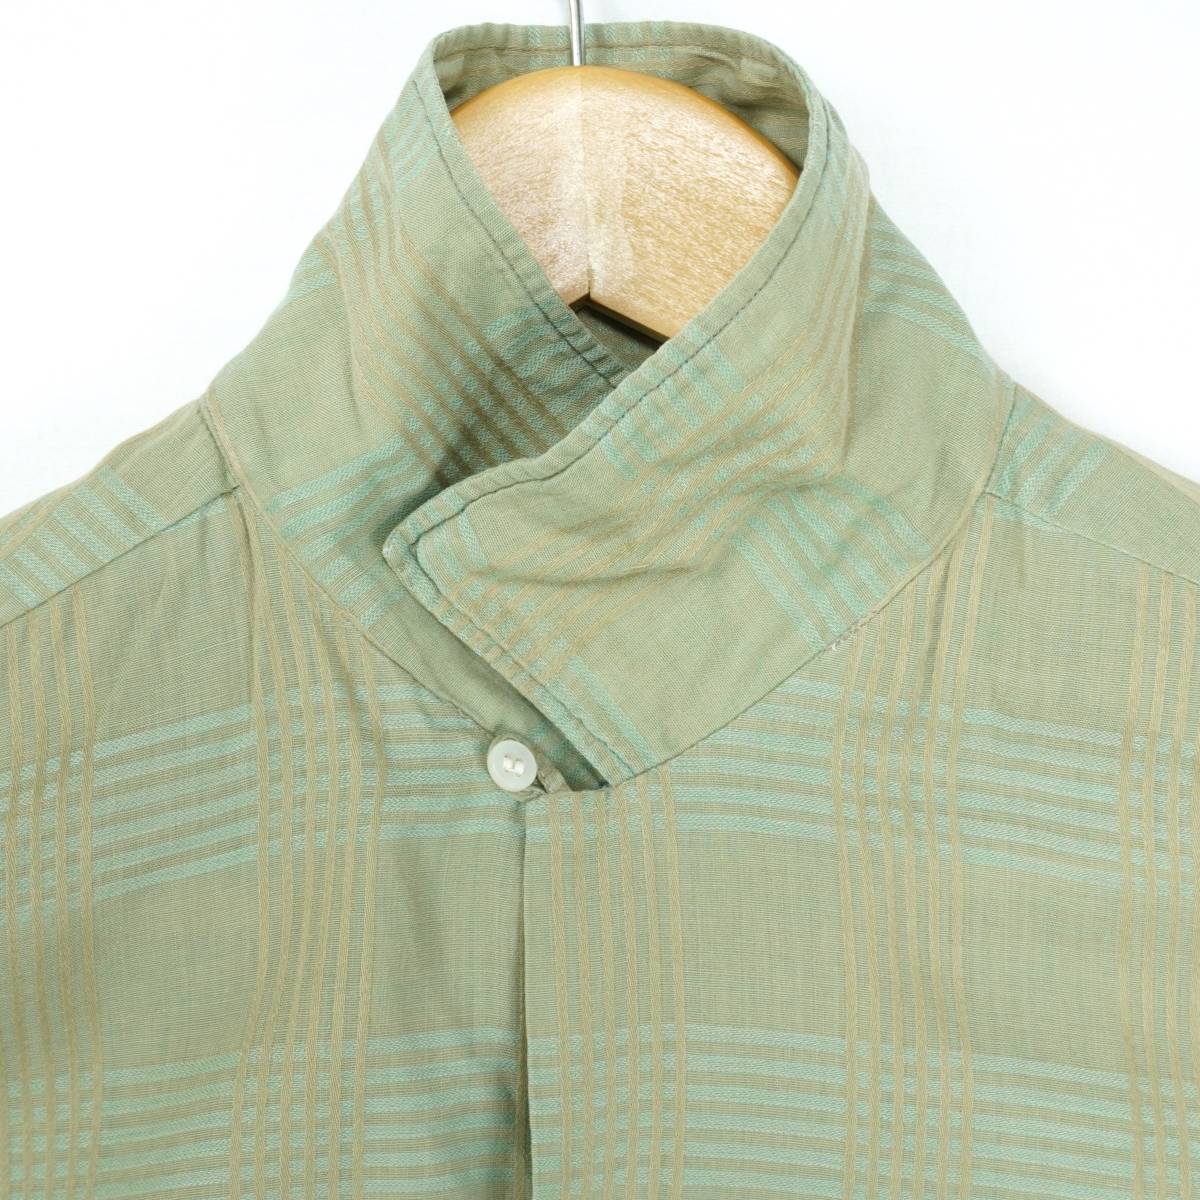 Rhodes Shirts 1950s 1960s M SHIRT23148 Vintage ロードス オープンカラーシャツ 1950年代 1960年代 ヴィンテージ ボックスシルエット_画像5